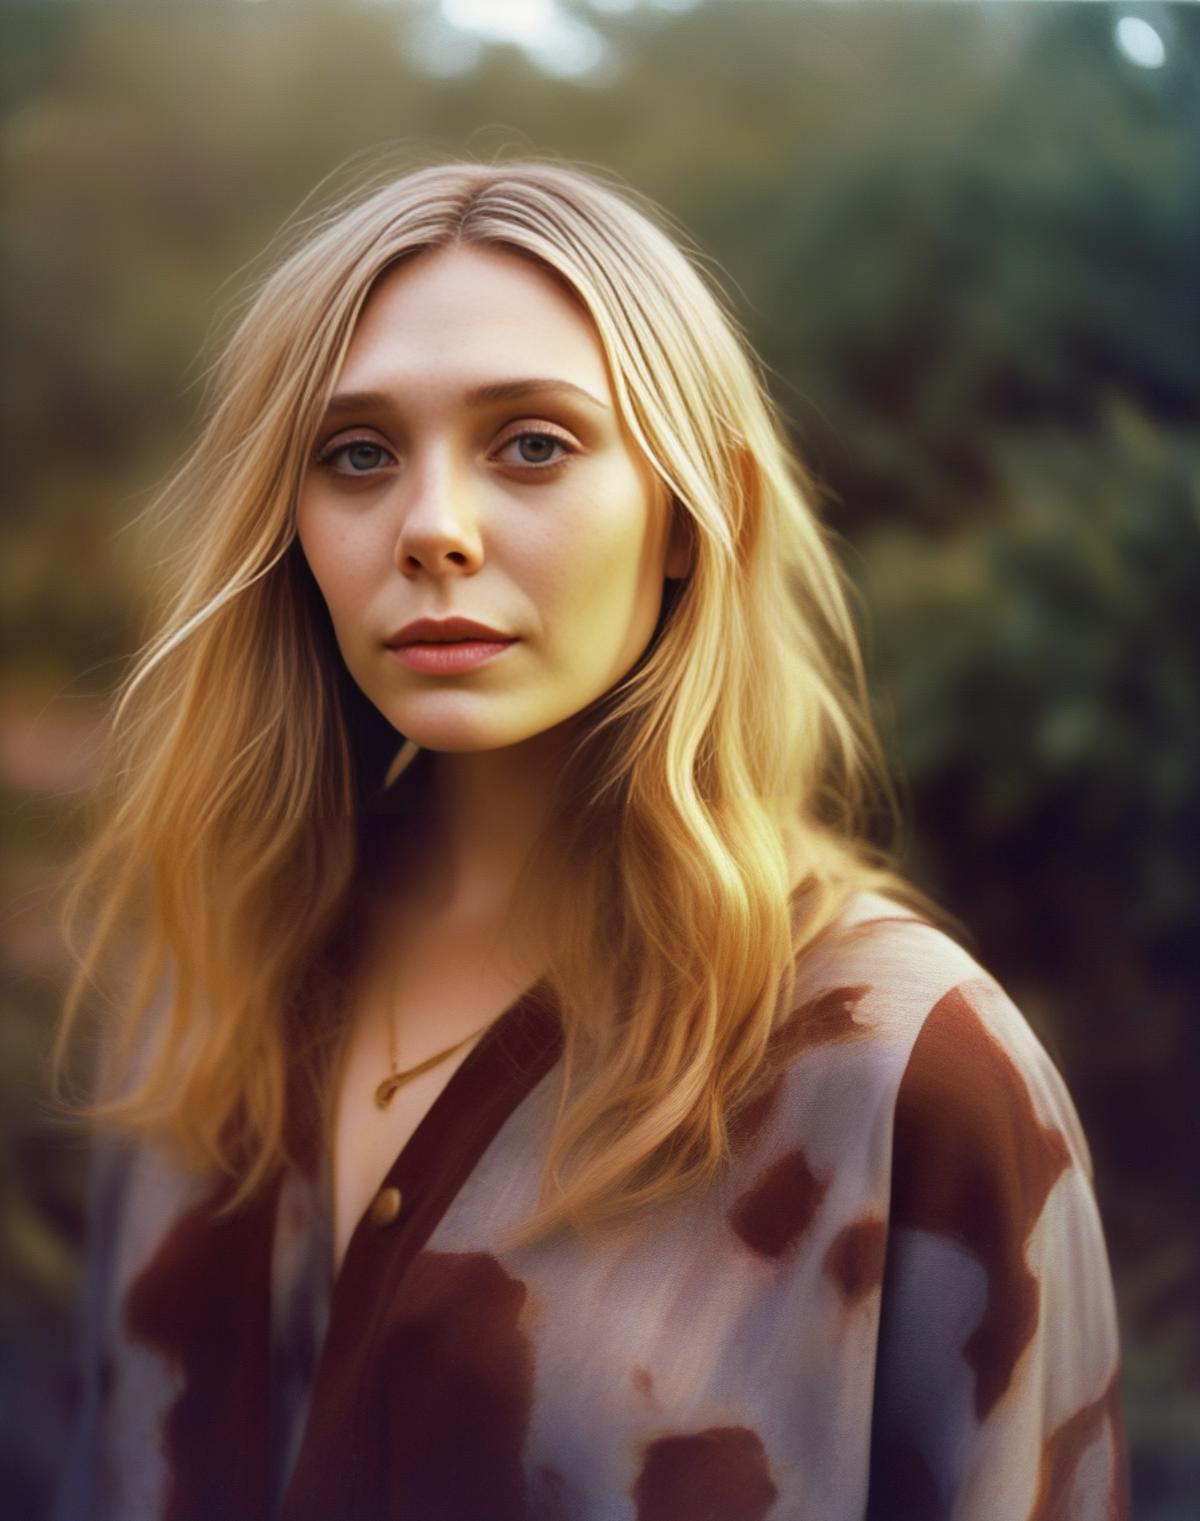 Elizabeth Olsen image by parar20